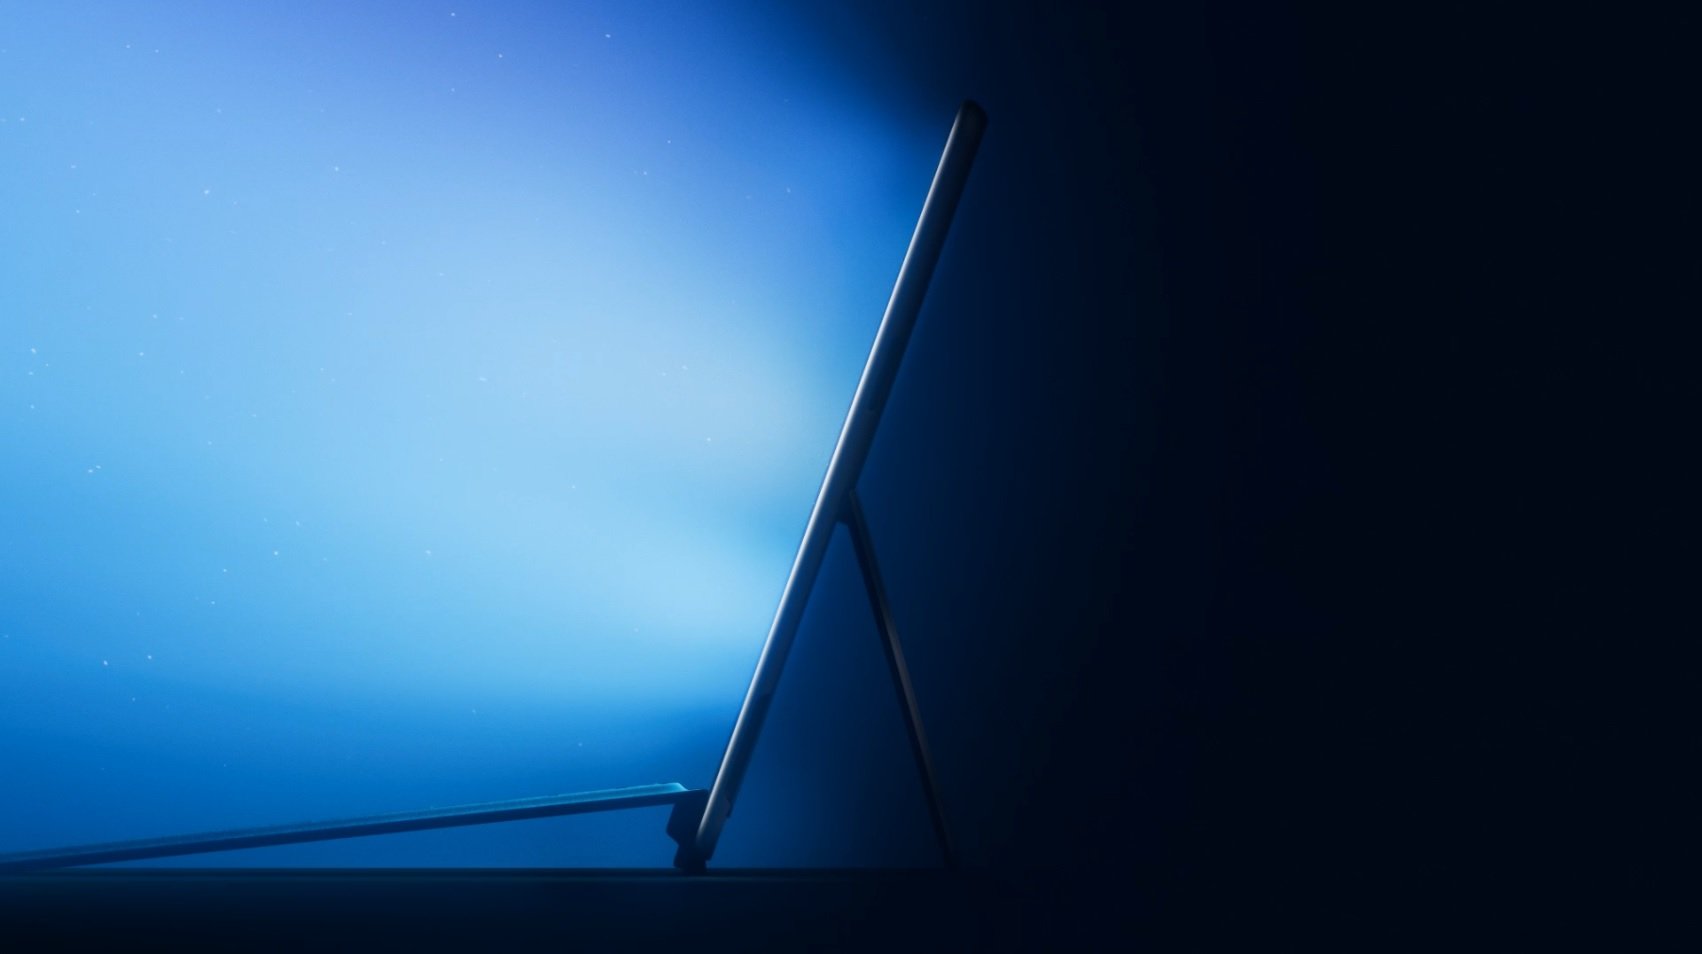 Στις 22 Σεπτεμβρίου η Microsoft θα ανακοινώσει νέες συσκευές Surface